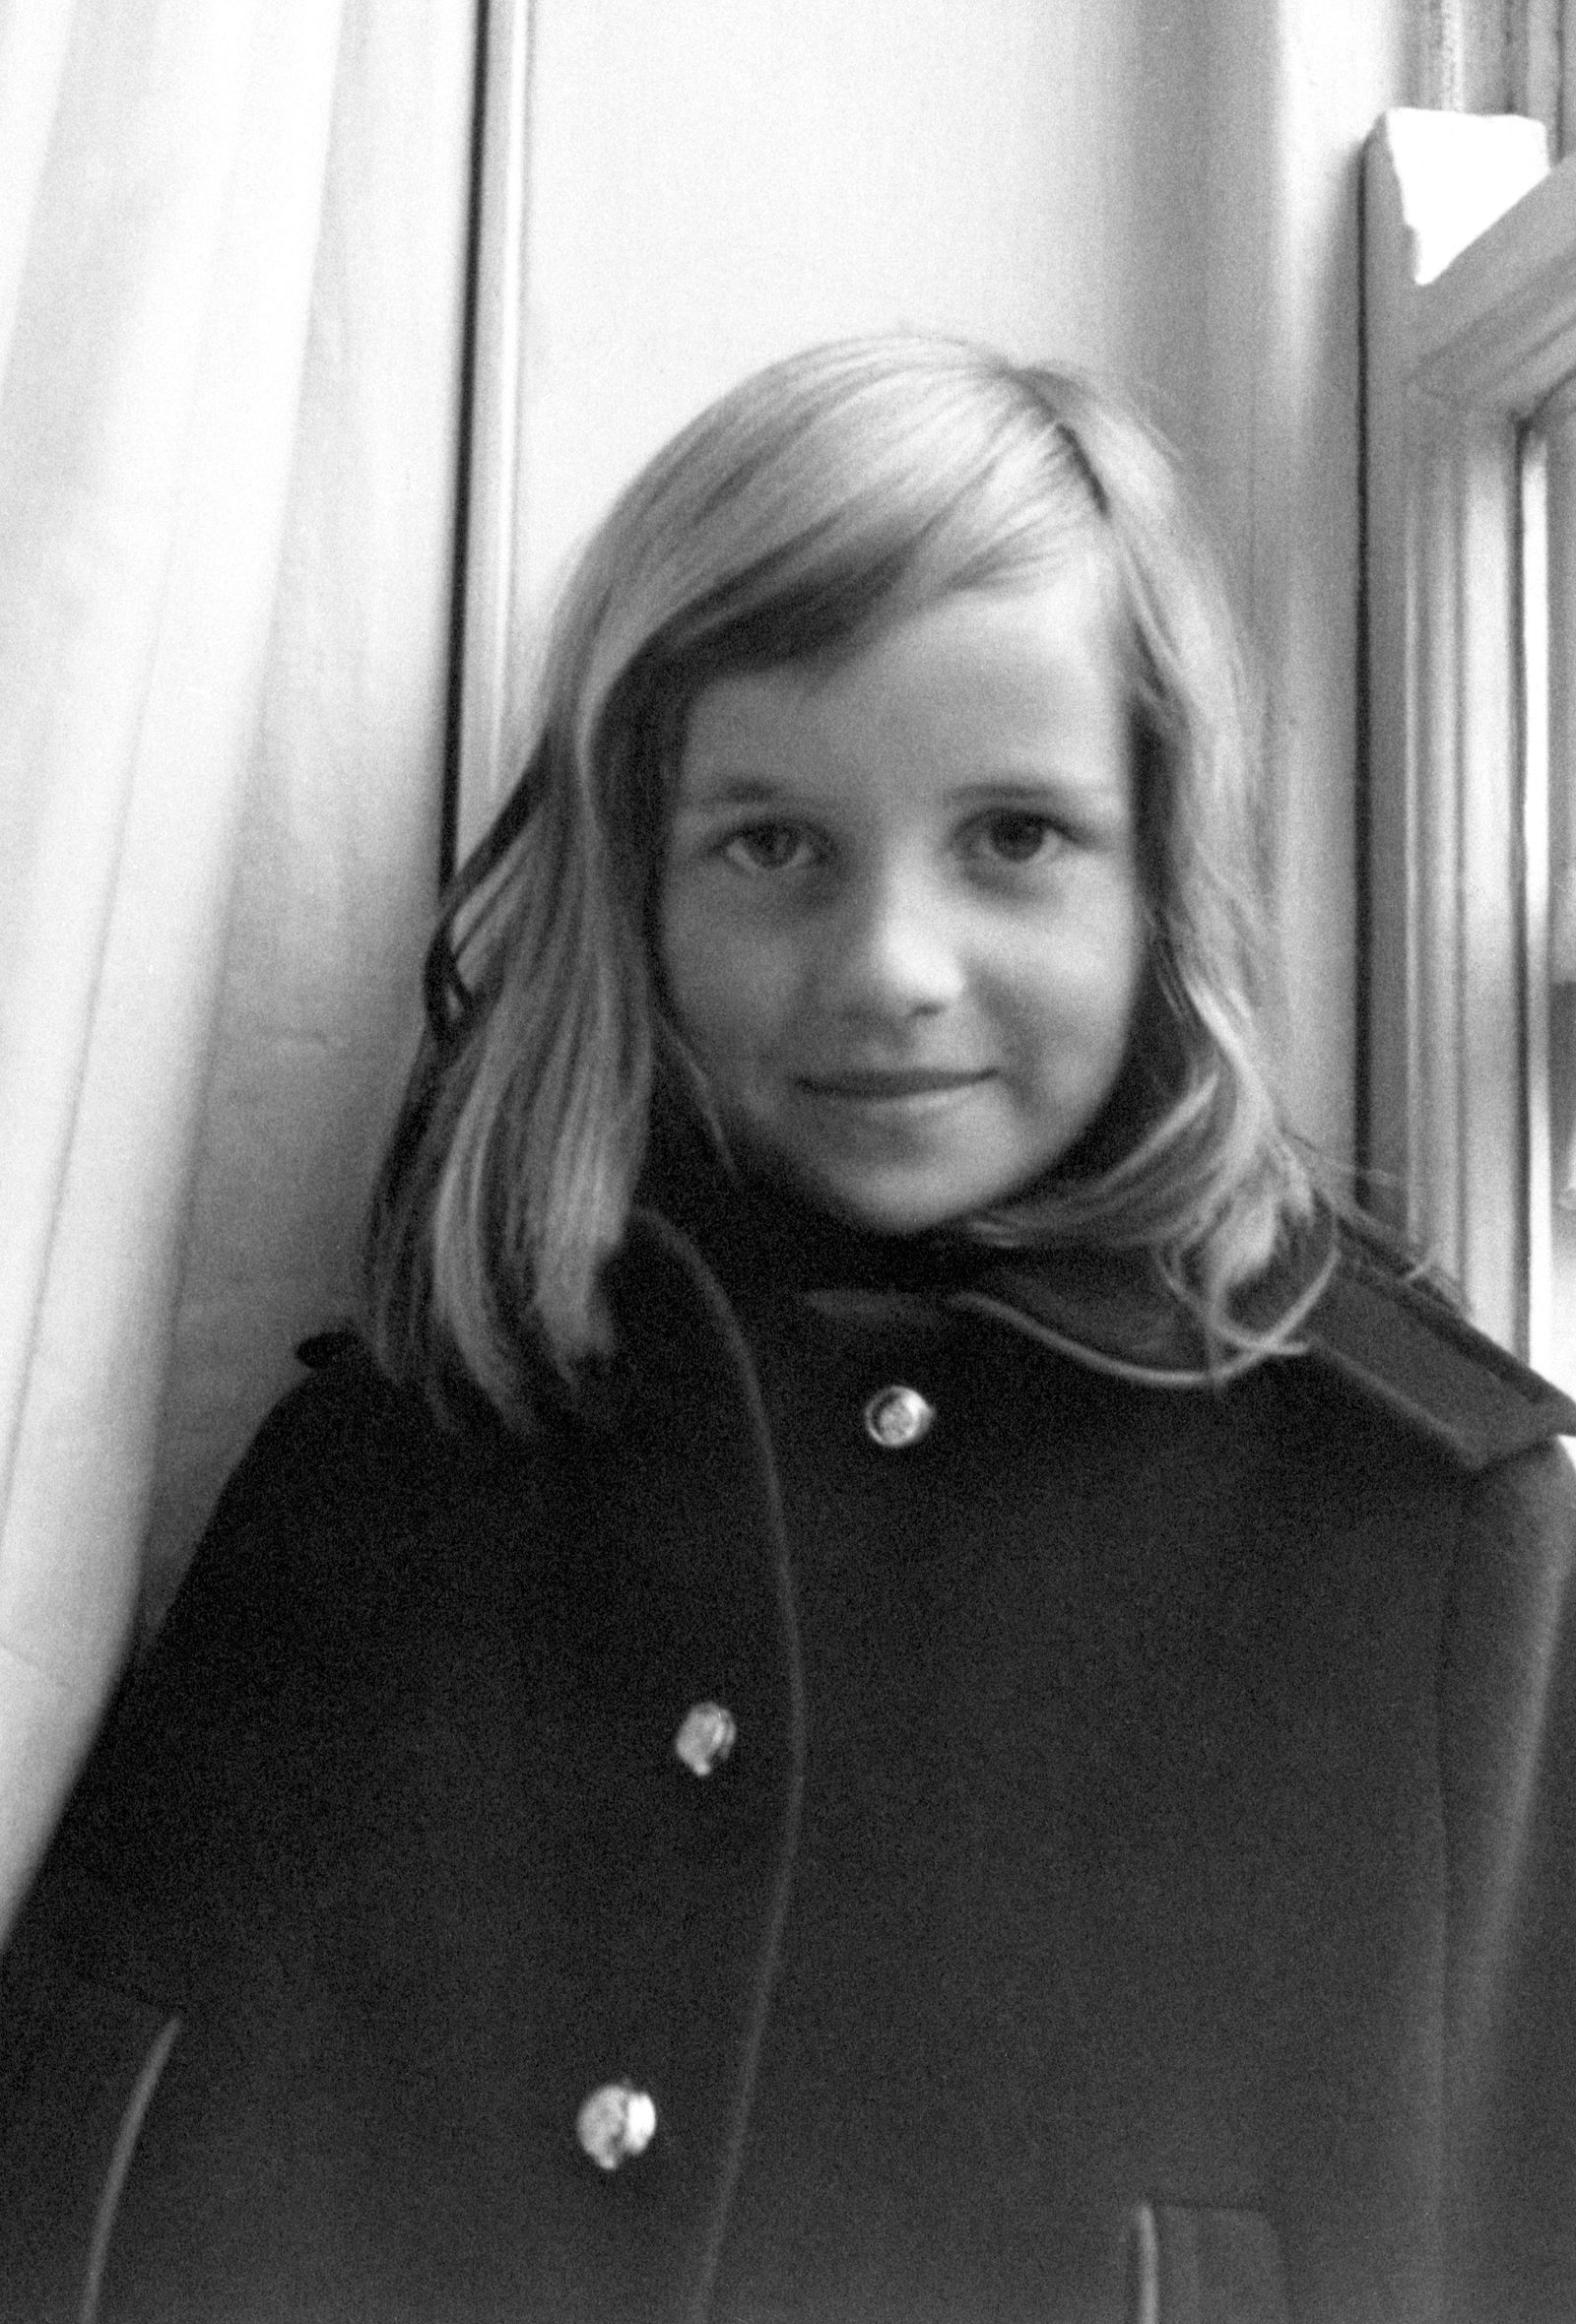 ديانا ترتدي معطفاً شتوياً في لندن، وهي في عمر 7 سنوات - PA Images via Getty Images